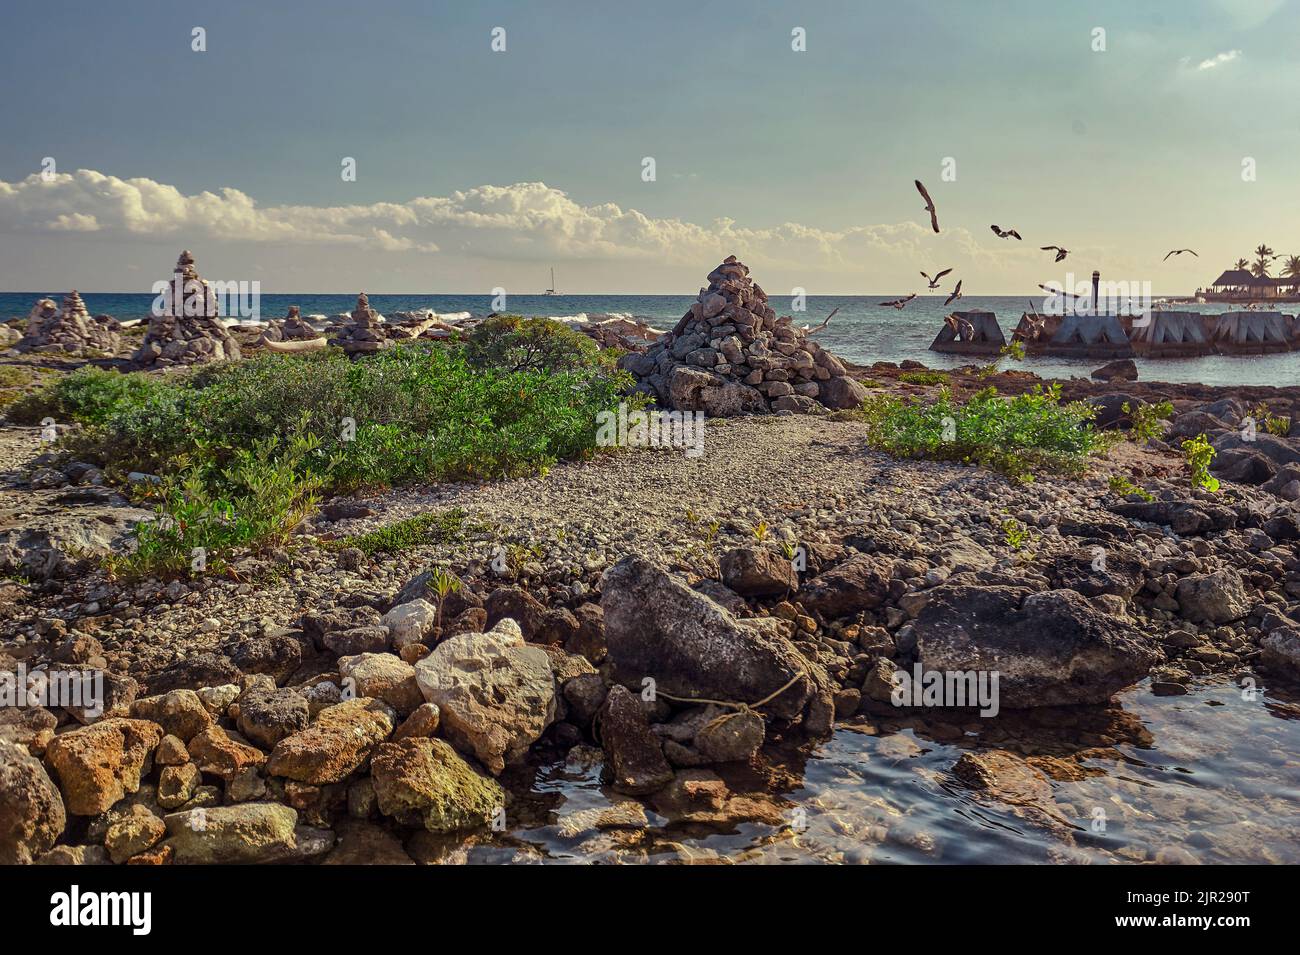 Particolare della vista della spiaggia di Puerto Aventuras in Messico con alcuni gabbiani che volano dal mare alla costa. Foto Stock